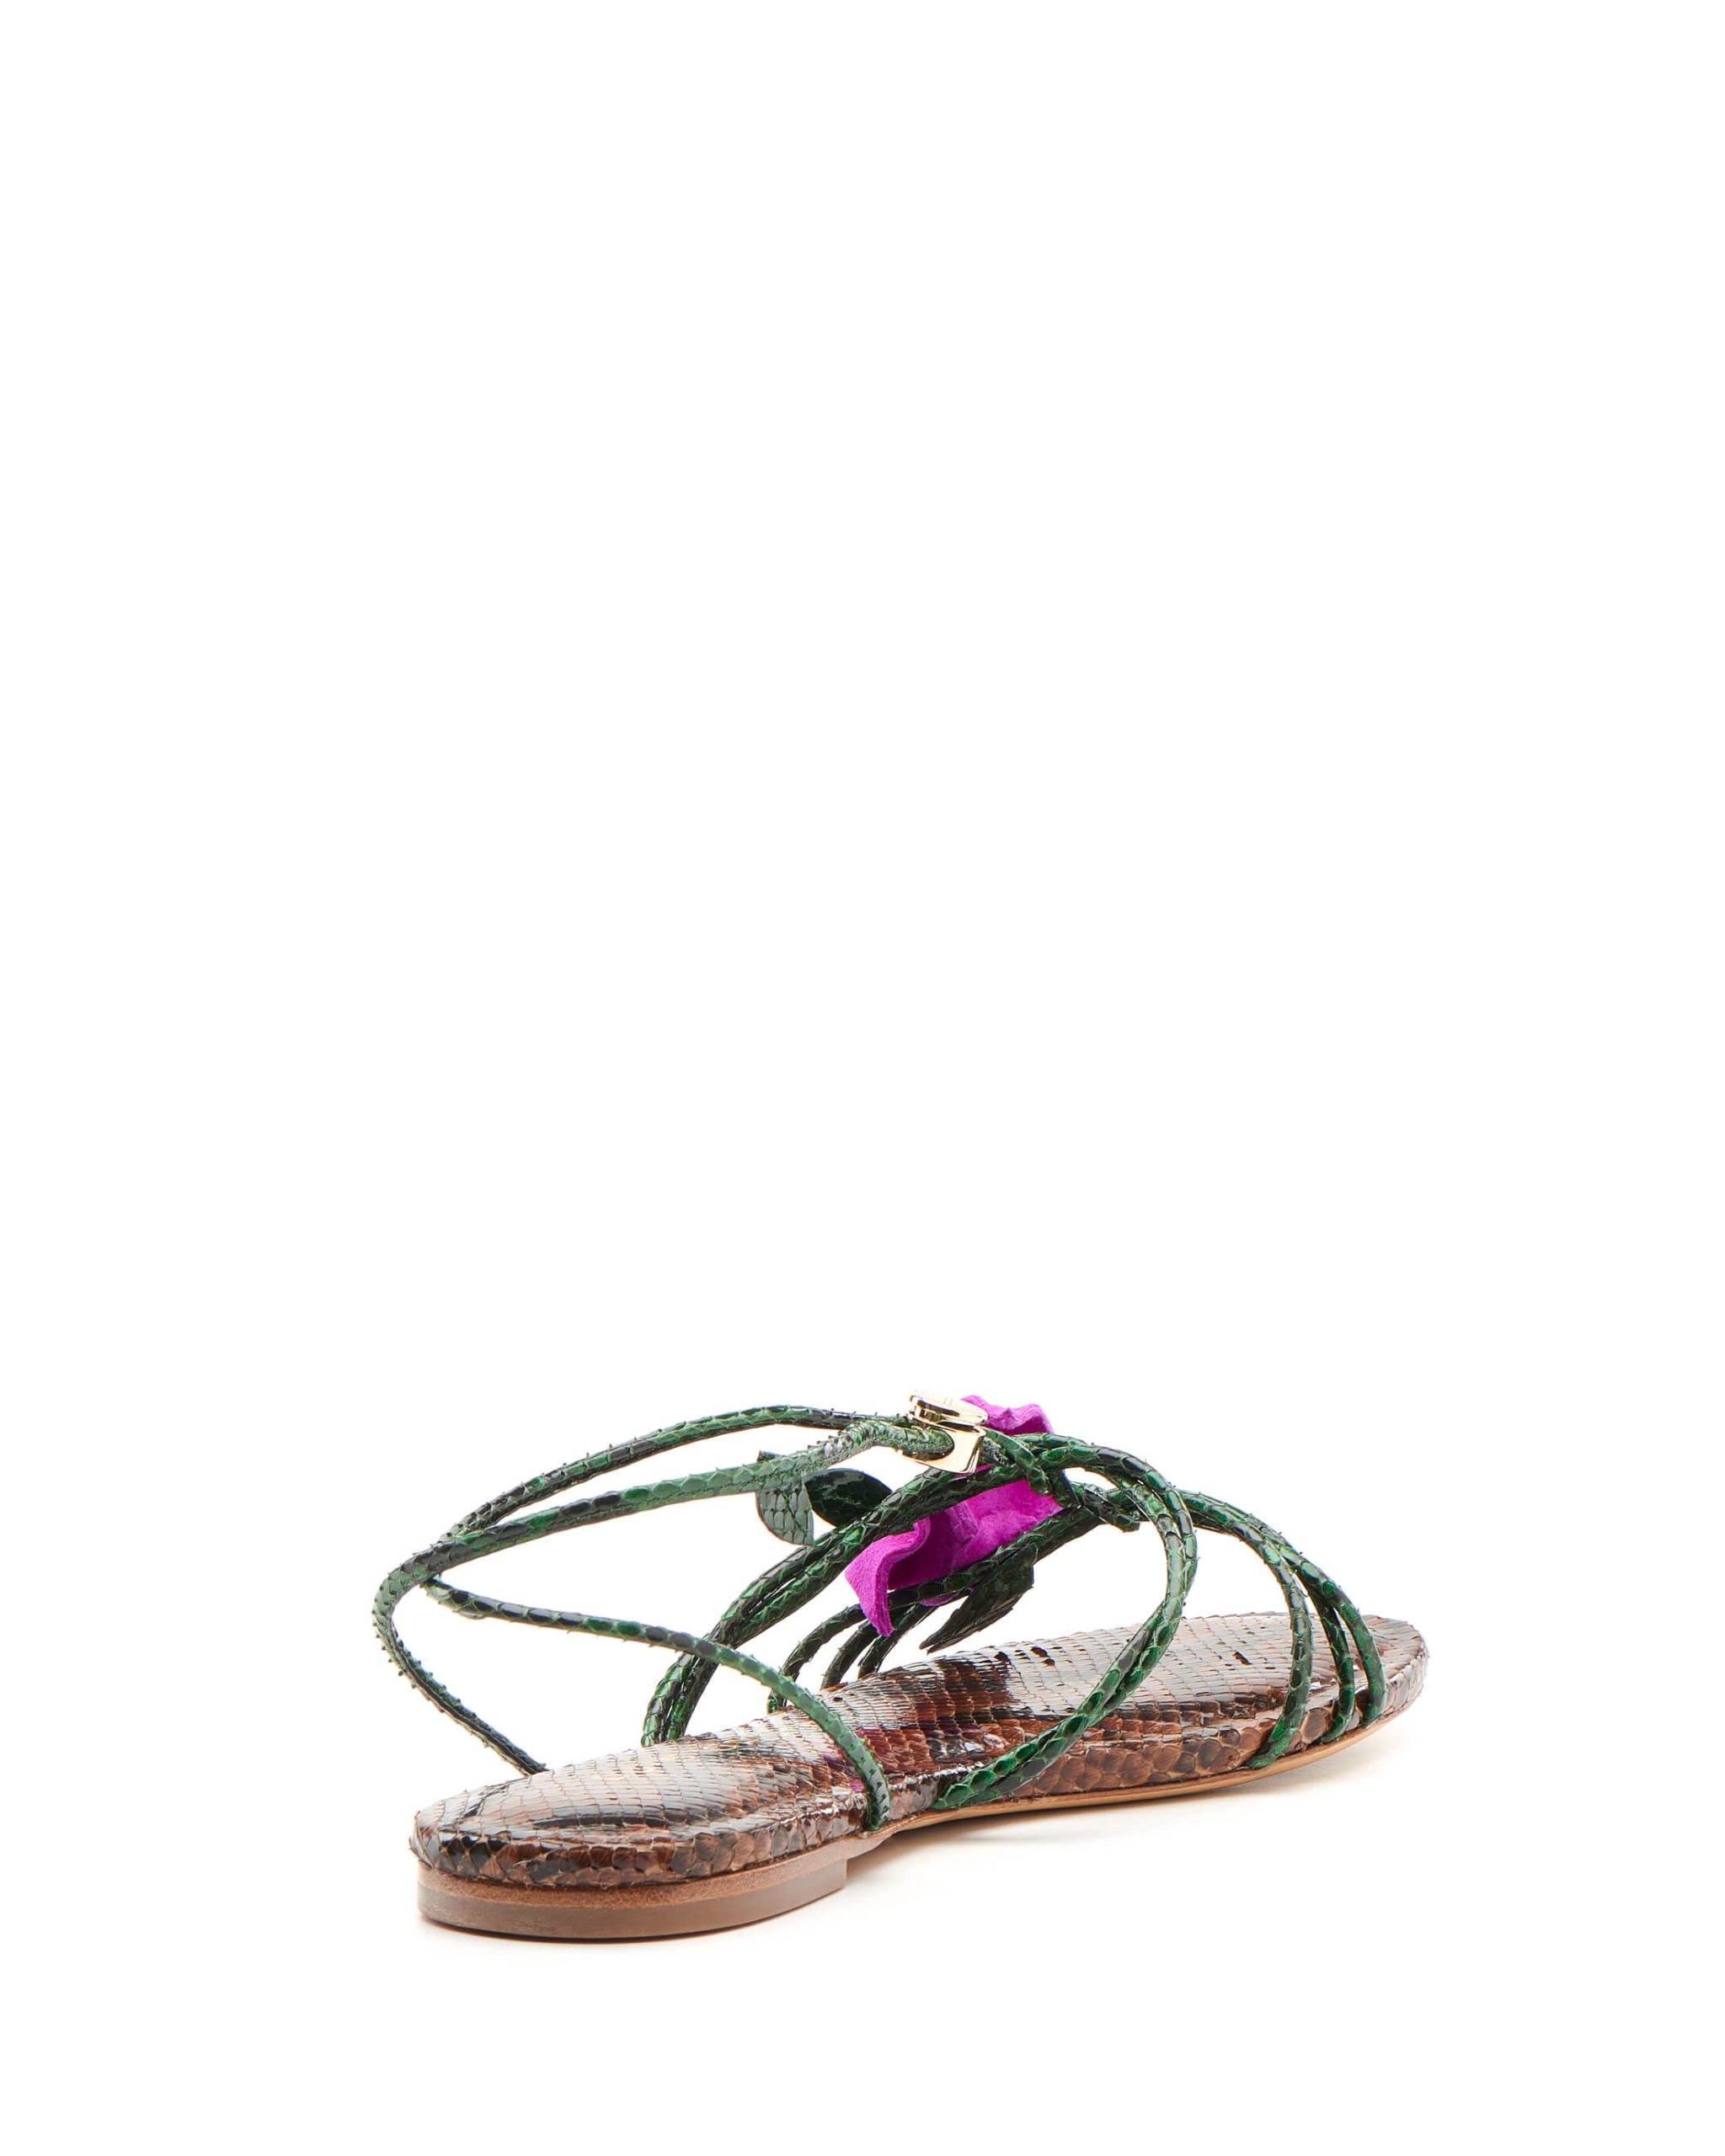 Luis Onofre Portuguese Shoes FW22 – 5382 – Floralia-3